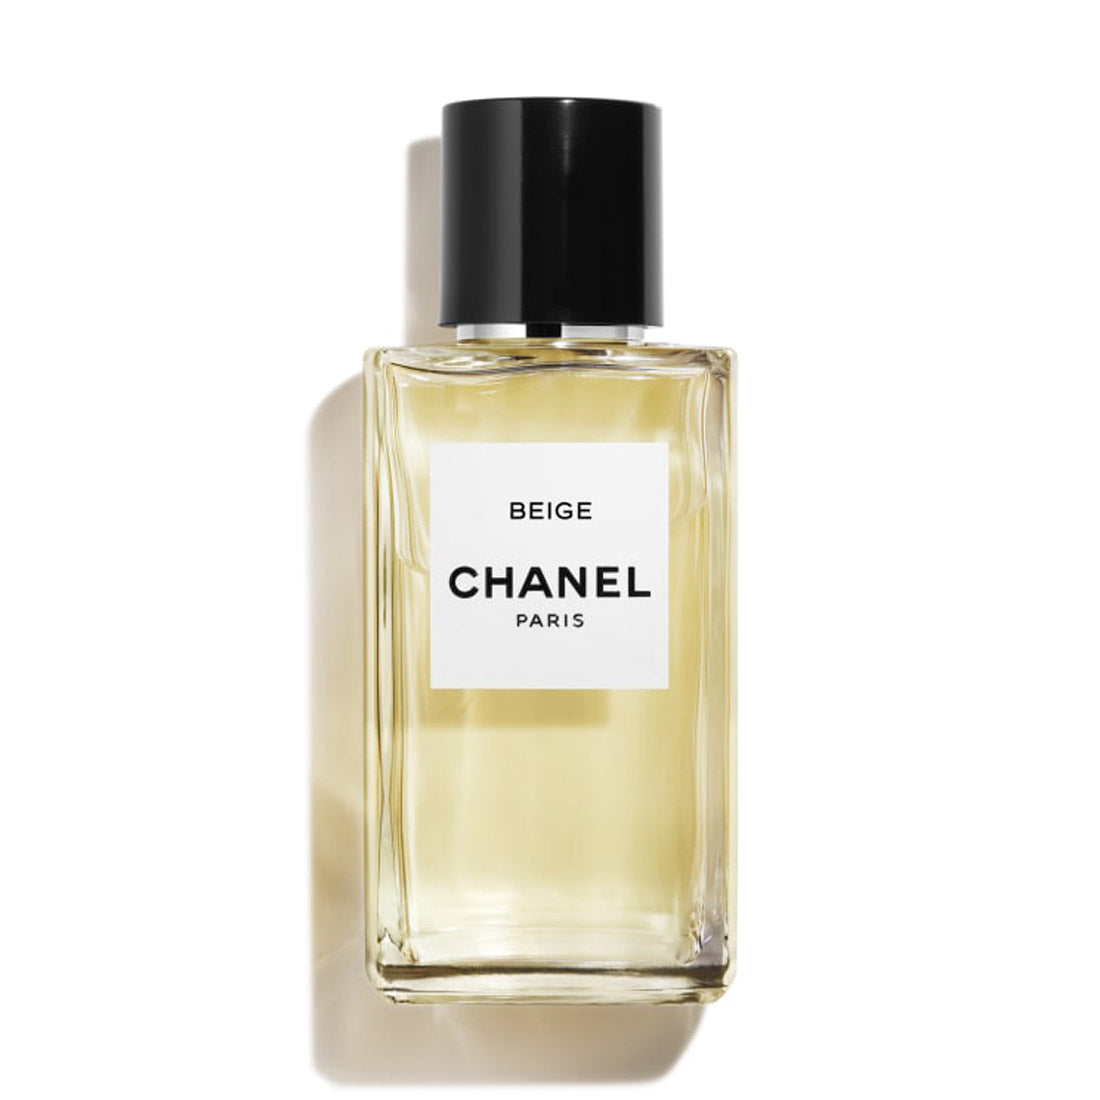 BEIGE Les Exclusifs de Chanel 1.5 ml/ 0.05 oz Eau de Parfum Spray Vial